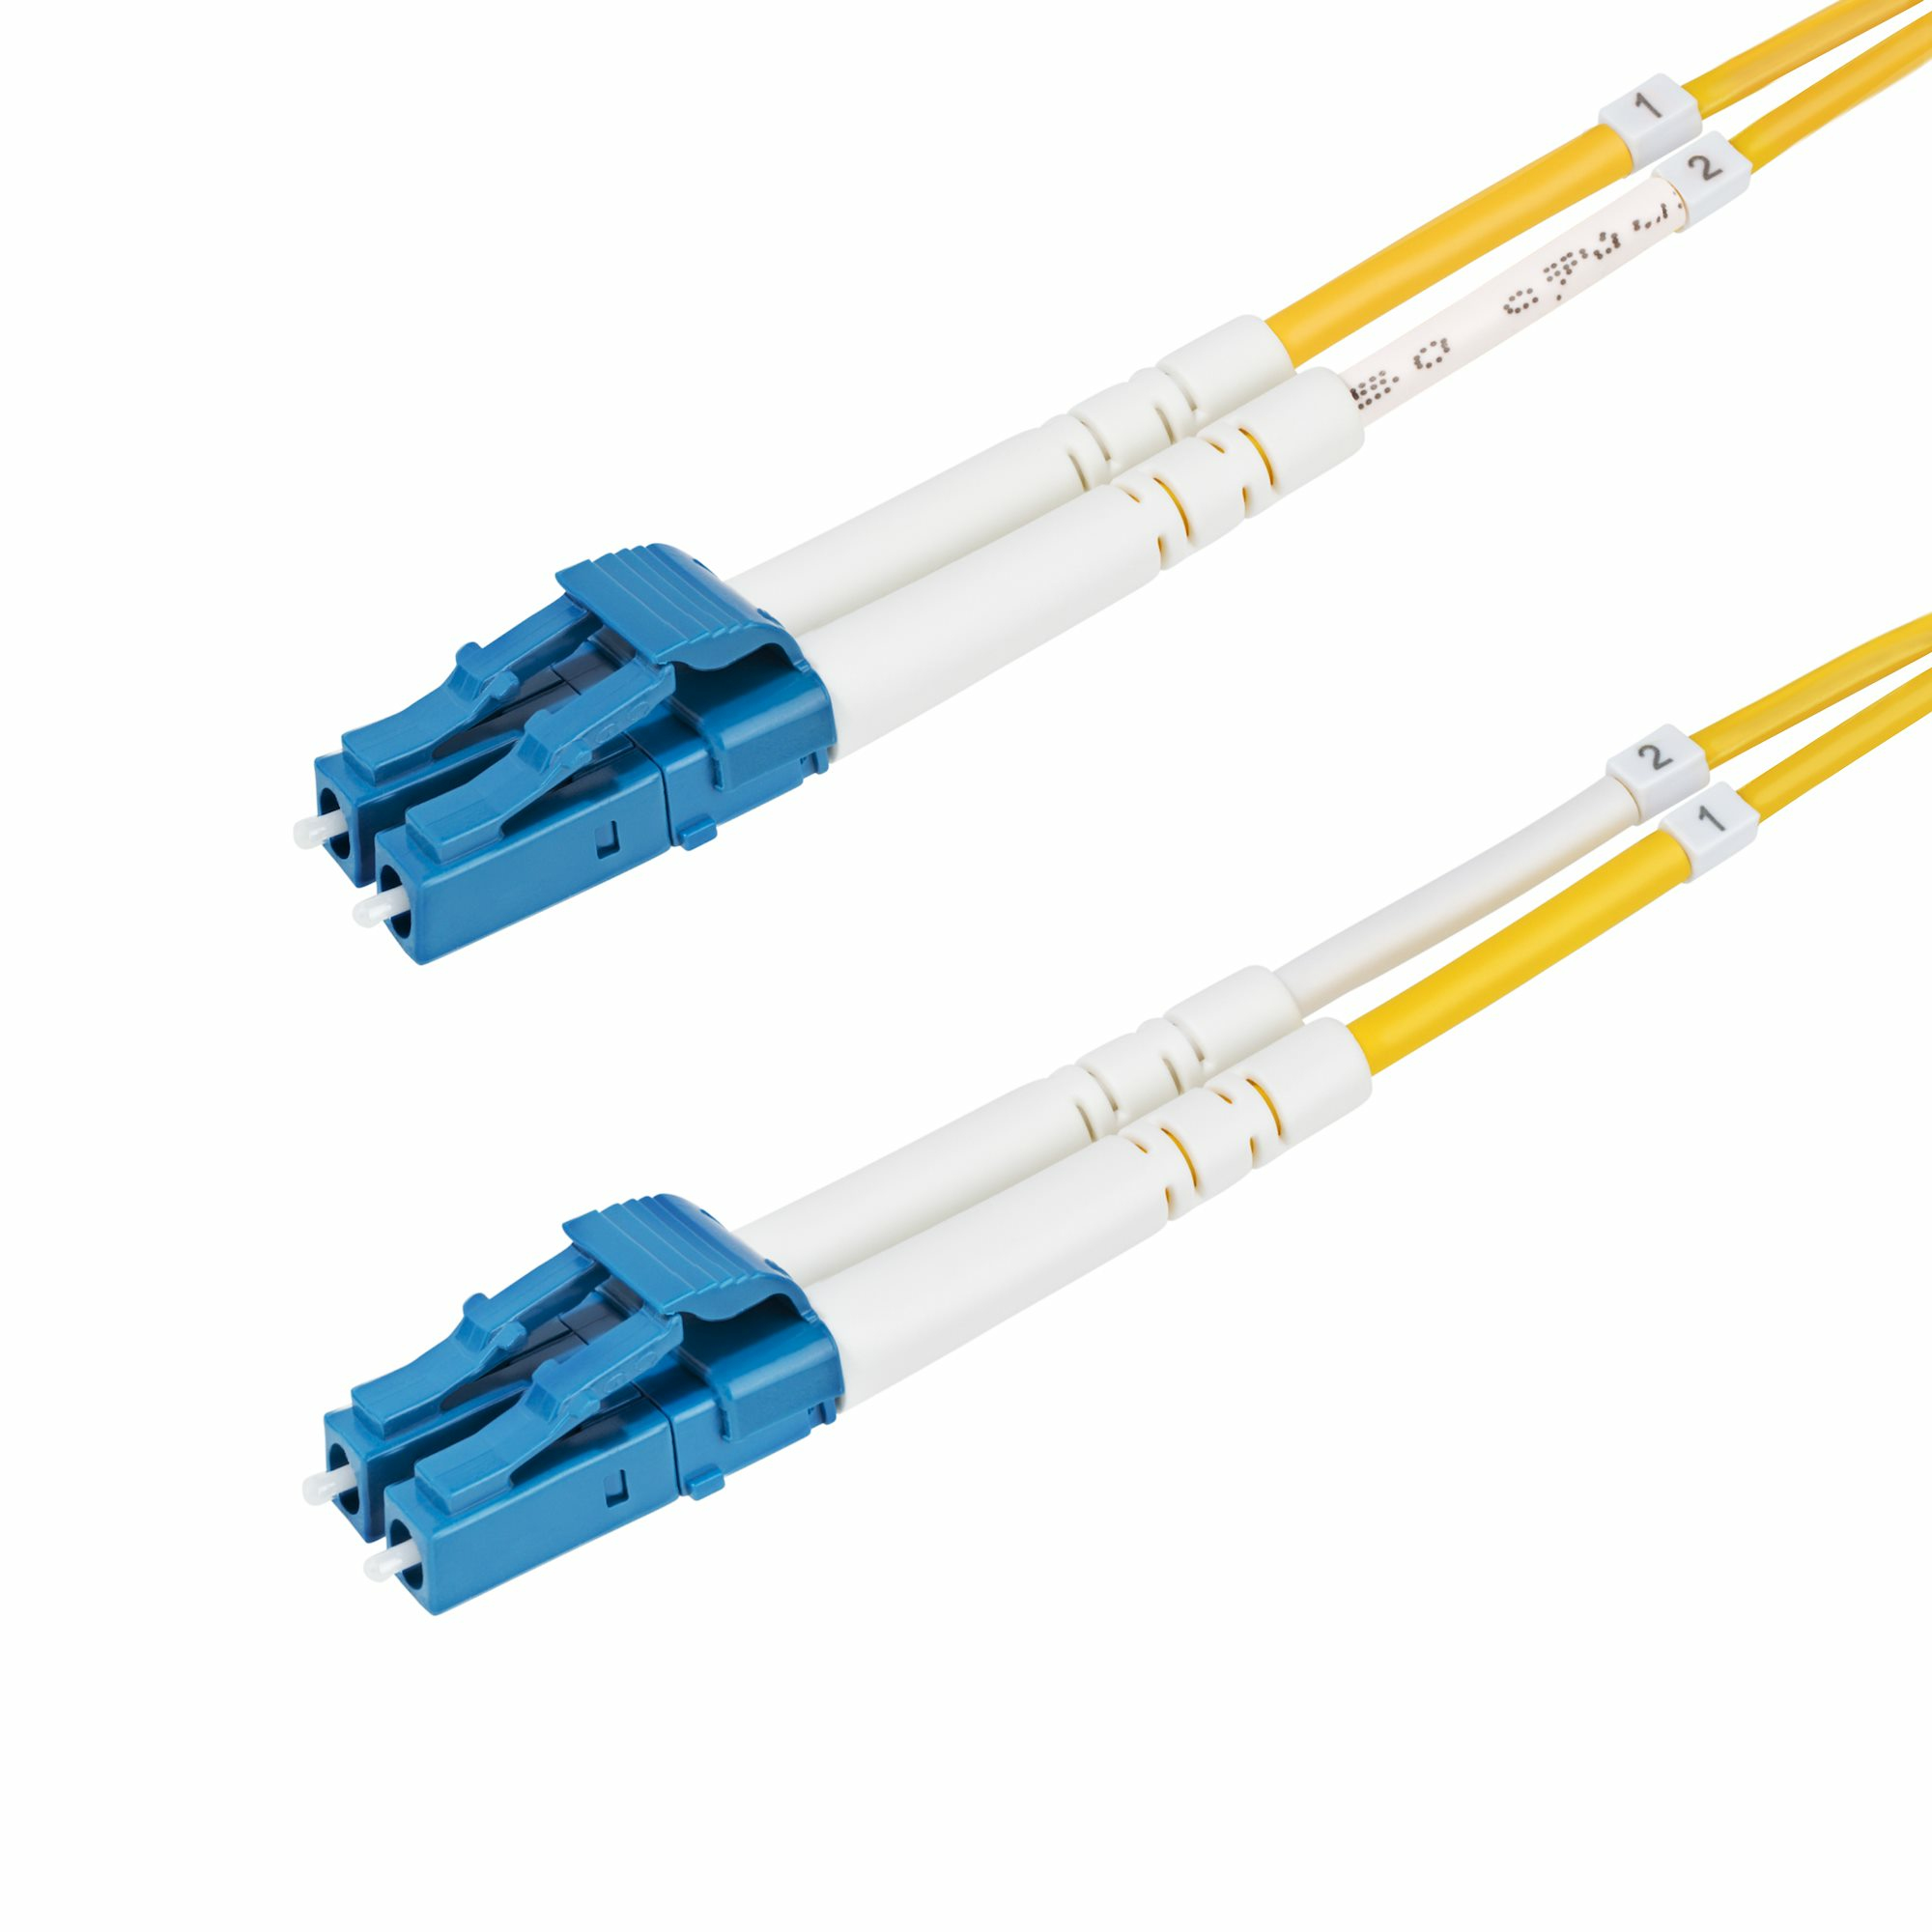 Startech - Cables                Lc/lc Single Mode Fiber Cable       Os2/upc/duplex/lszh                 Smdos2lclc30m